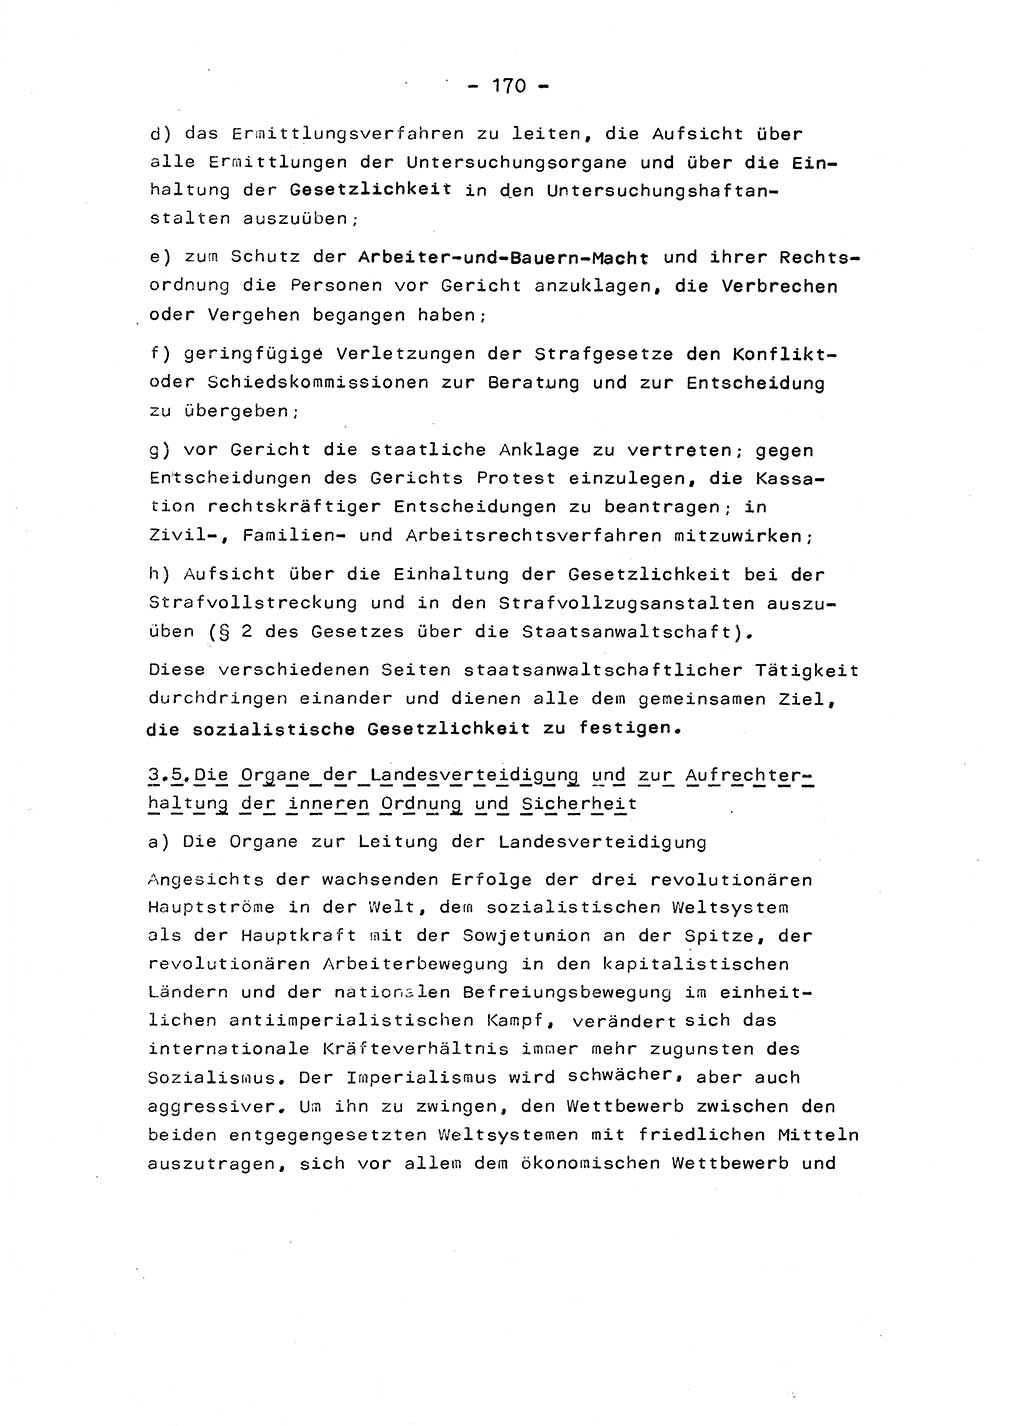 Marxistisch-leninistische Staats- und Rechtstheorie [Deutsche Demokratische Republik (DDR)] 1975, Seite 170 (ML St.-R.-Th. DDR 1975, S. 170)